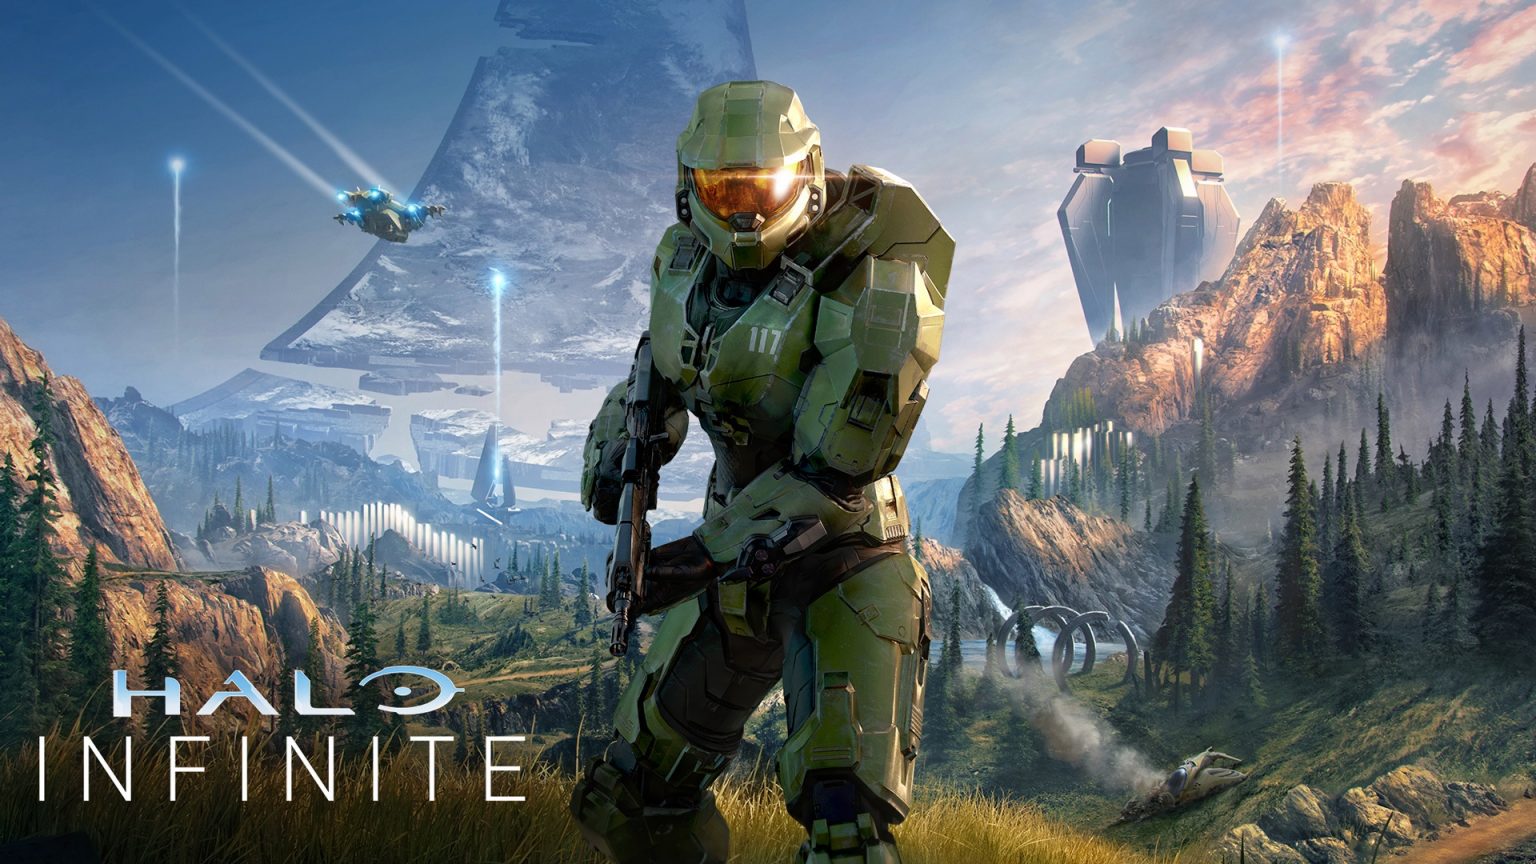 Halo, Fable či nová Forza. Xbox Series X dostáva nálož exkluzívnych titulov